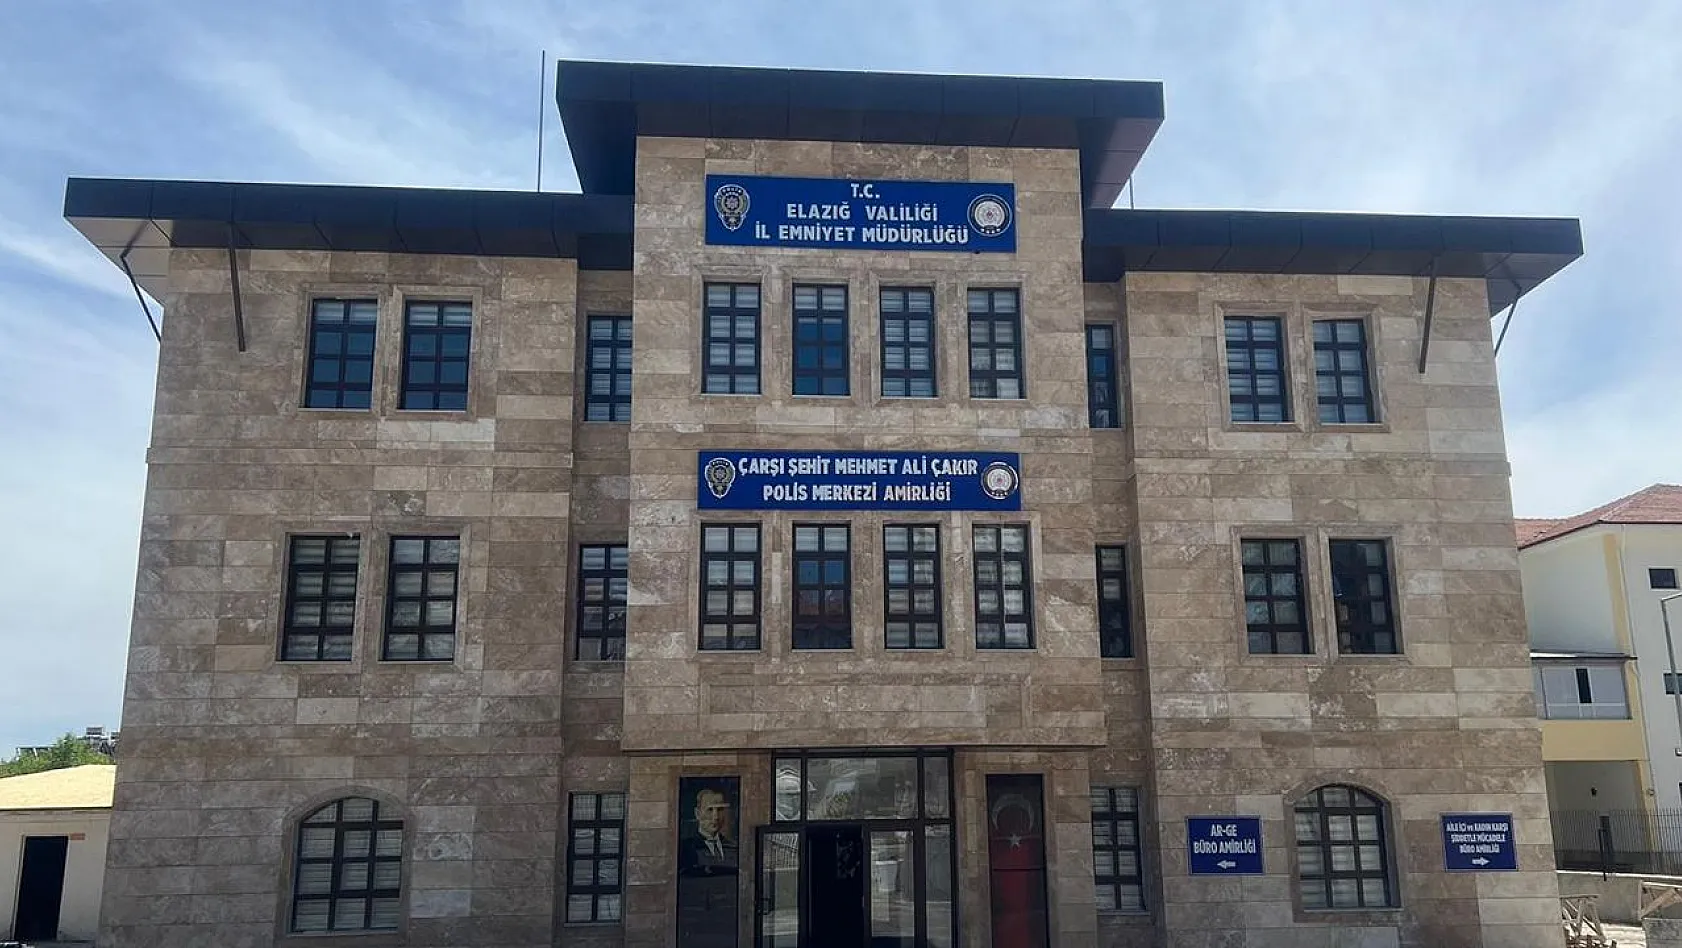 Elazığ'da Artan Asayiş Olaylarına Çözüm Olacak Projede Sona Gelindi